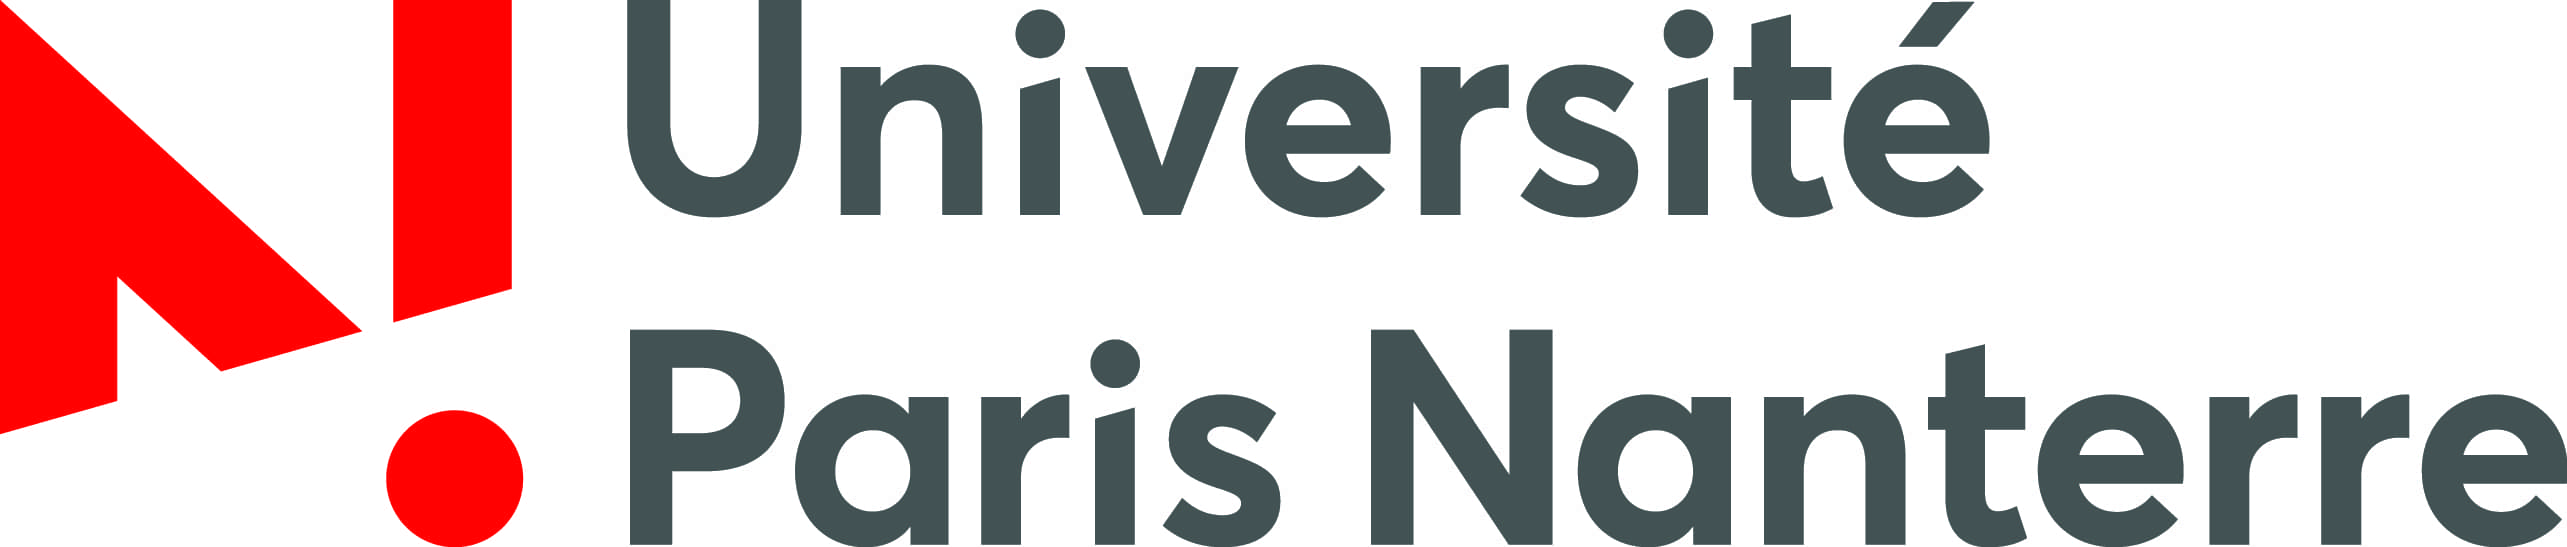 Universite Paris Nanterre (1).jpg